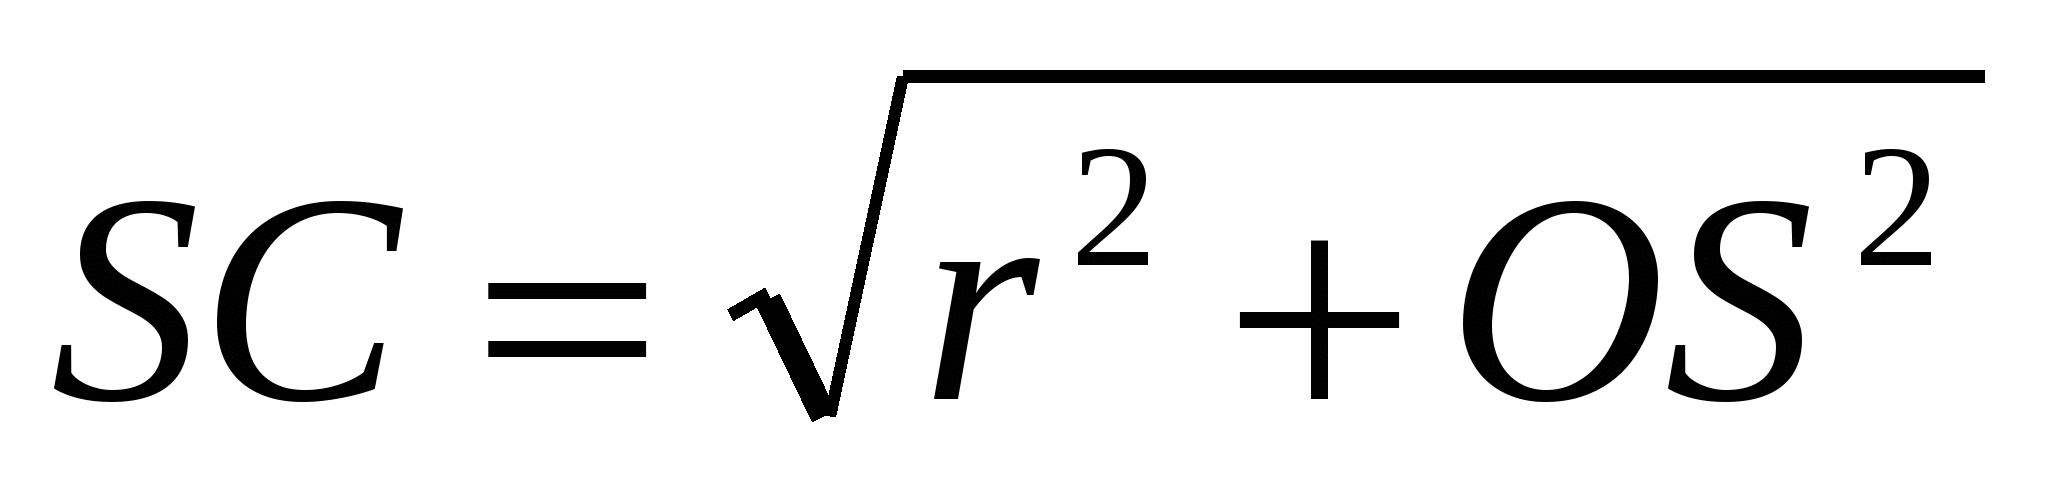 Теорема о трёх перпендикулярах.